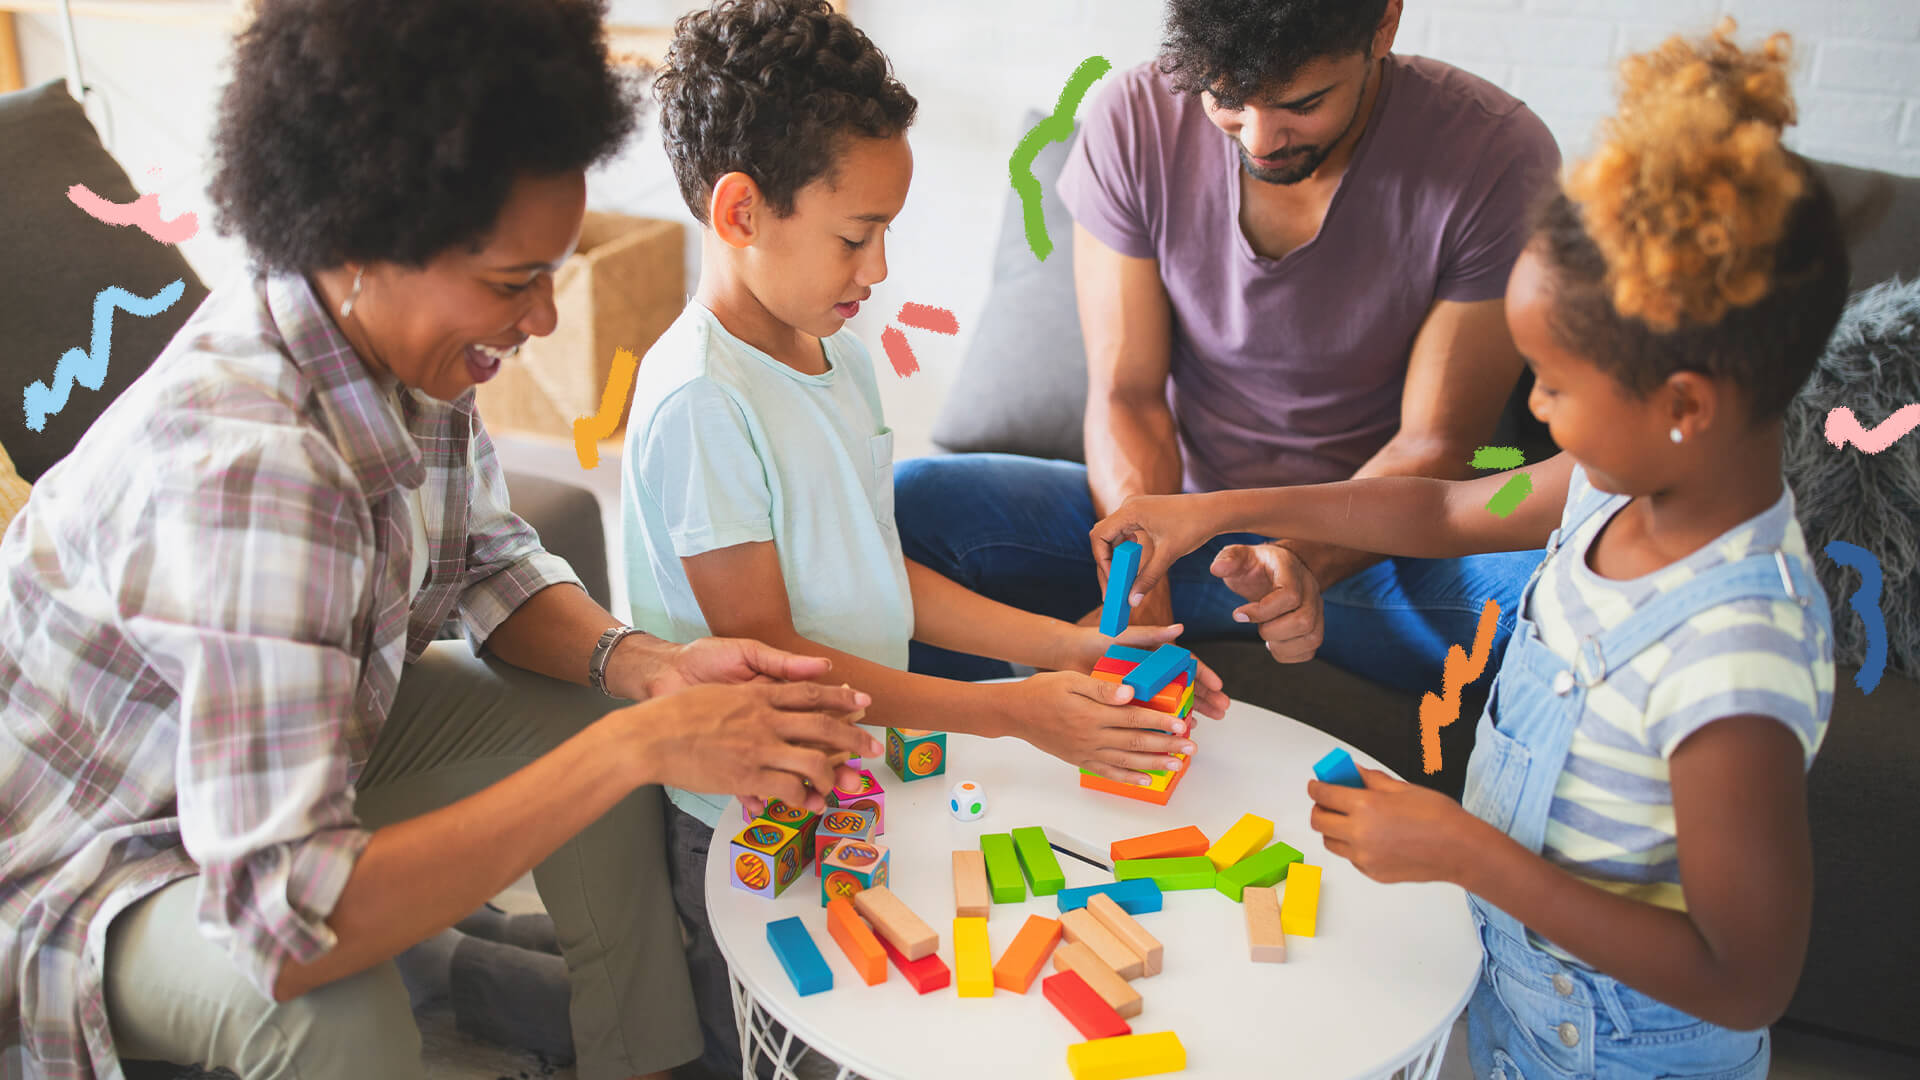 Na foto, uma família negra composta por mãe, pai e dois filhos (um menino e uma menina). Eles brincam em uma mesa com dados e objetos de montar. A imagem possui intervenções de rabiscos coloridos.